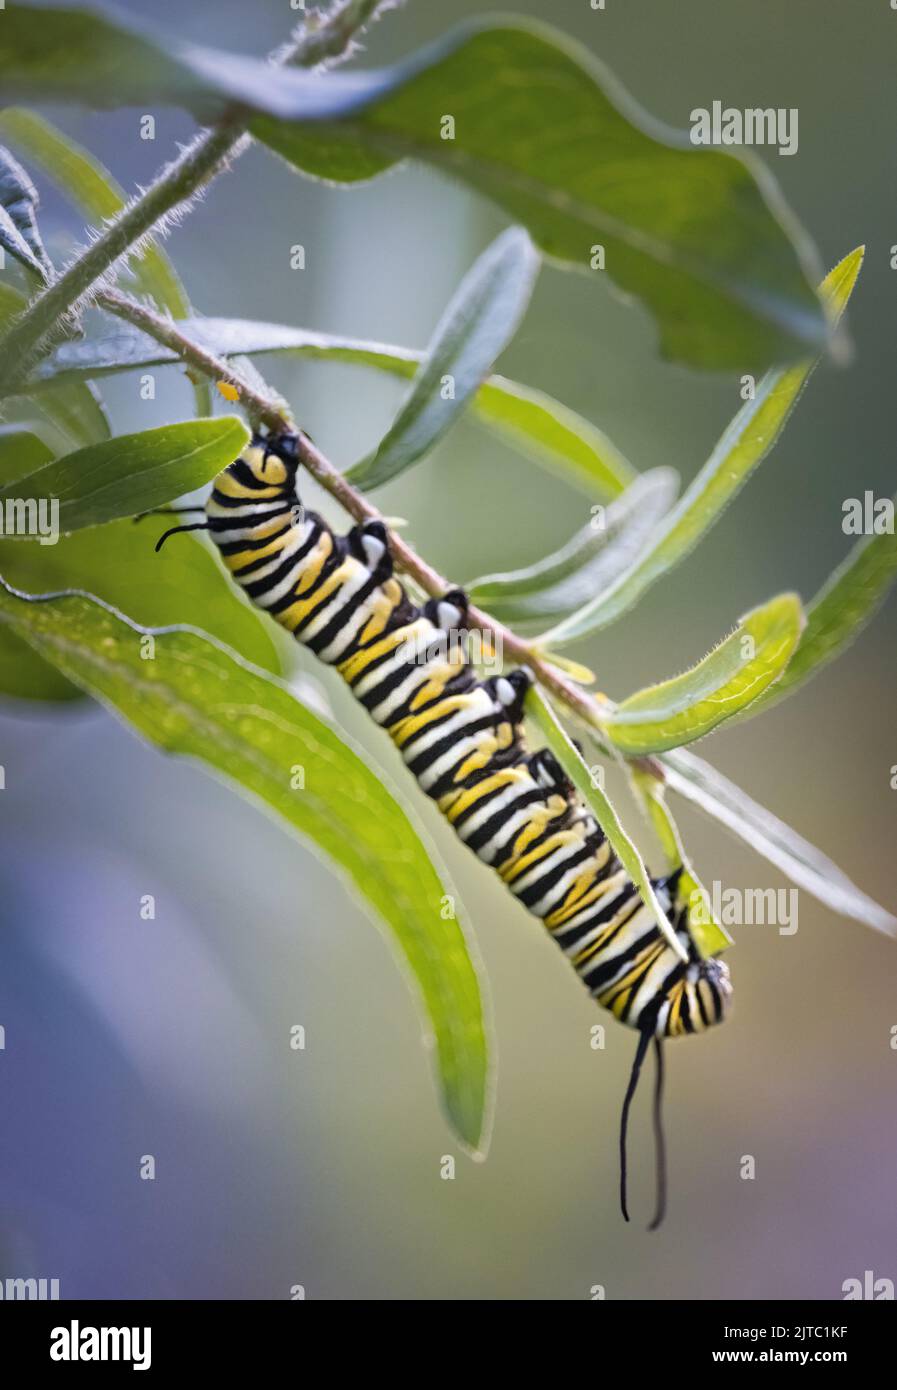 Una larva de oruga de mariposa monarca a rayas, Danaus plexippus, comiendo un exuberante follaje verde en verano o otoño en Lancaster, Pensilvania Foto de stock